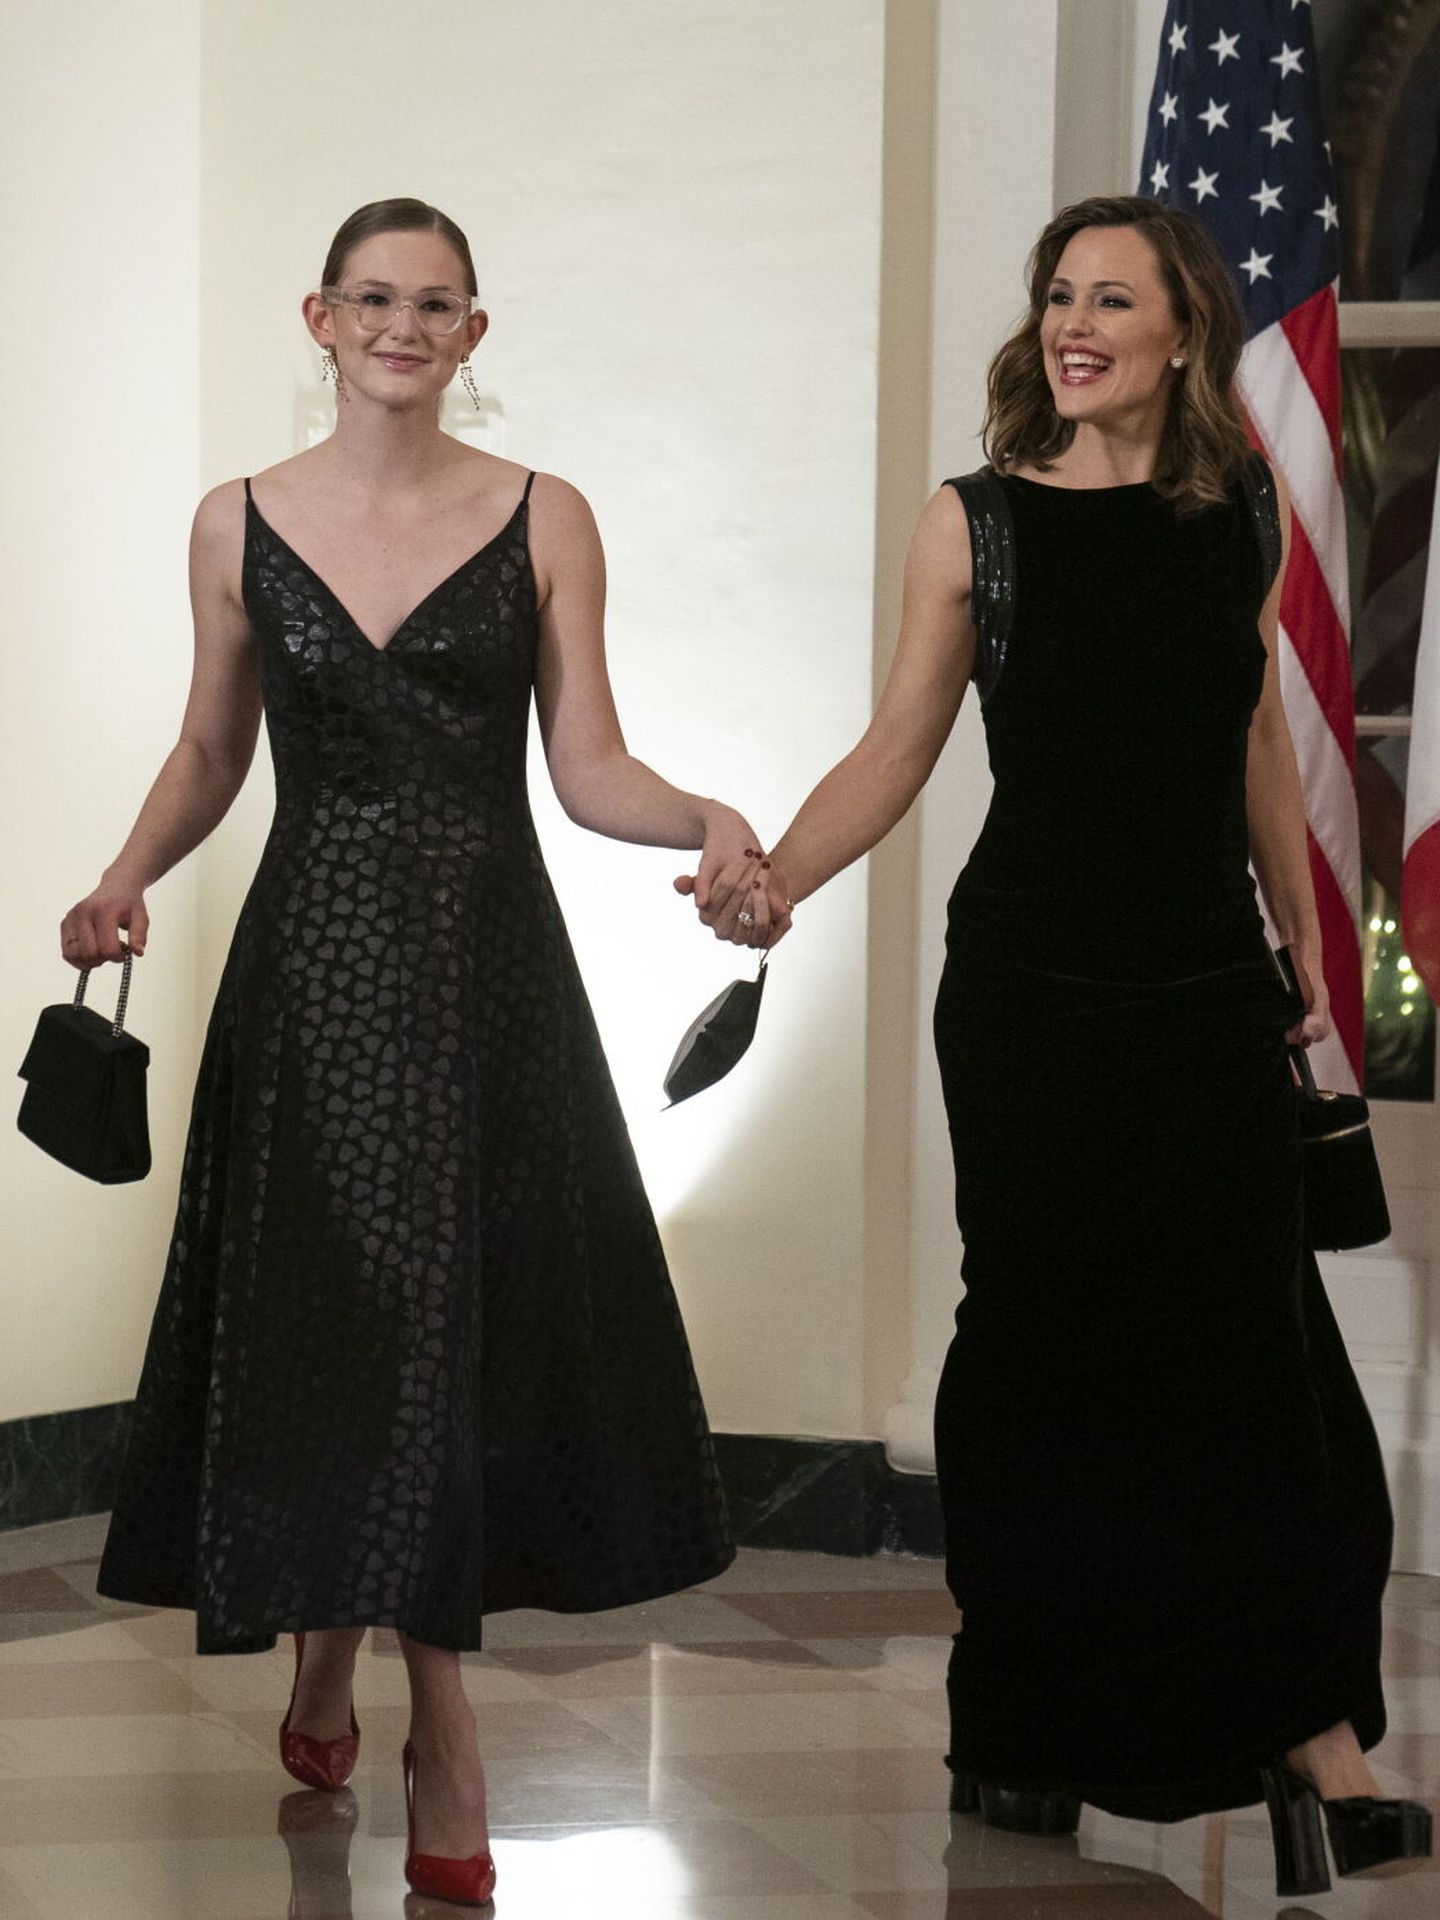 Hace un año, Jennifer Garner y su hija Violet Affleck acudieron a la cena de Estado de la Casa Blanca. (EFE/Pool/Sarah Silbiger)